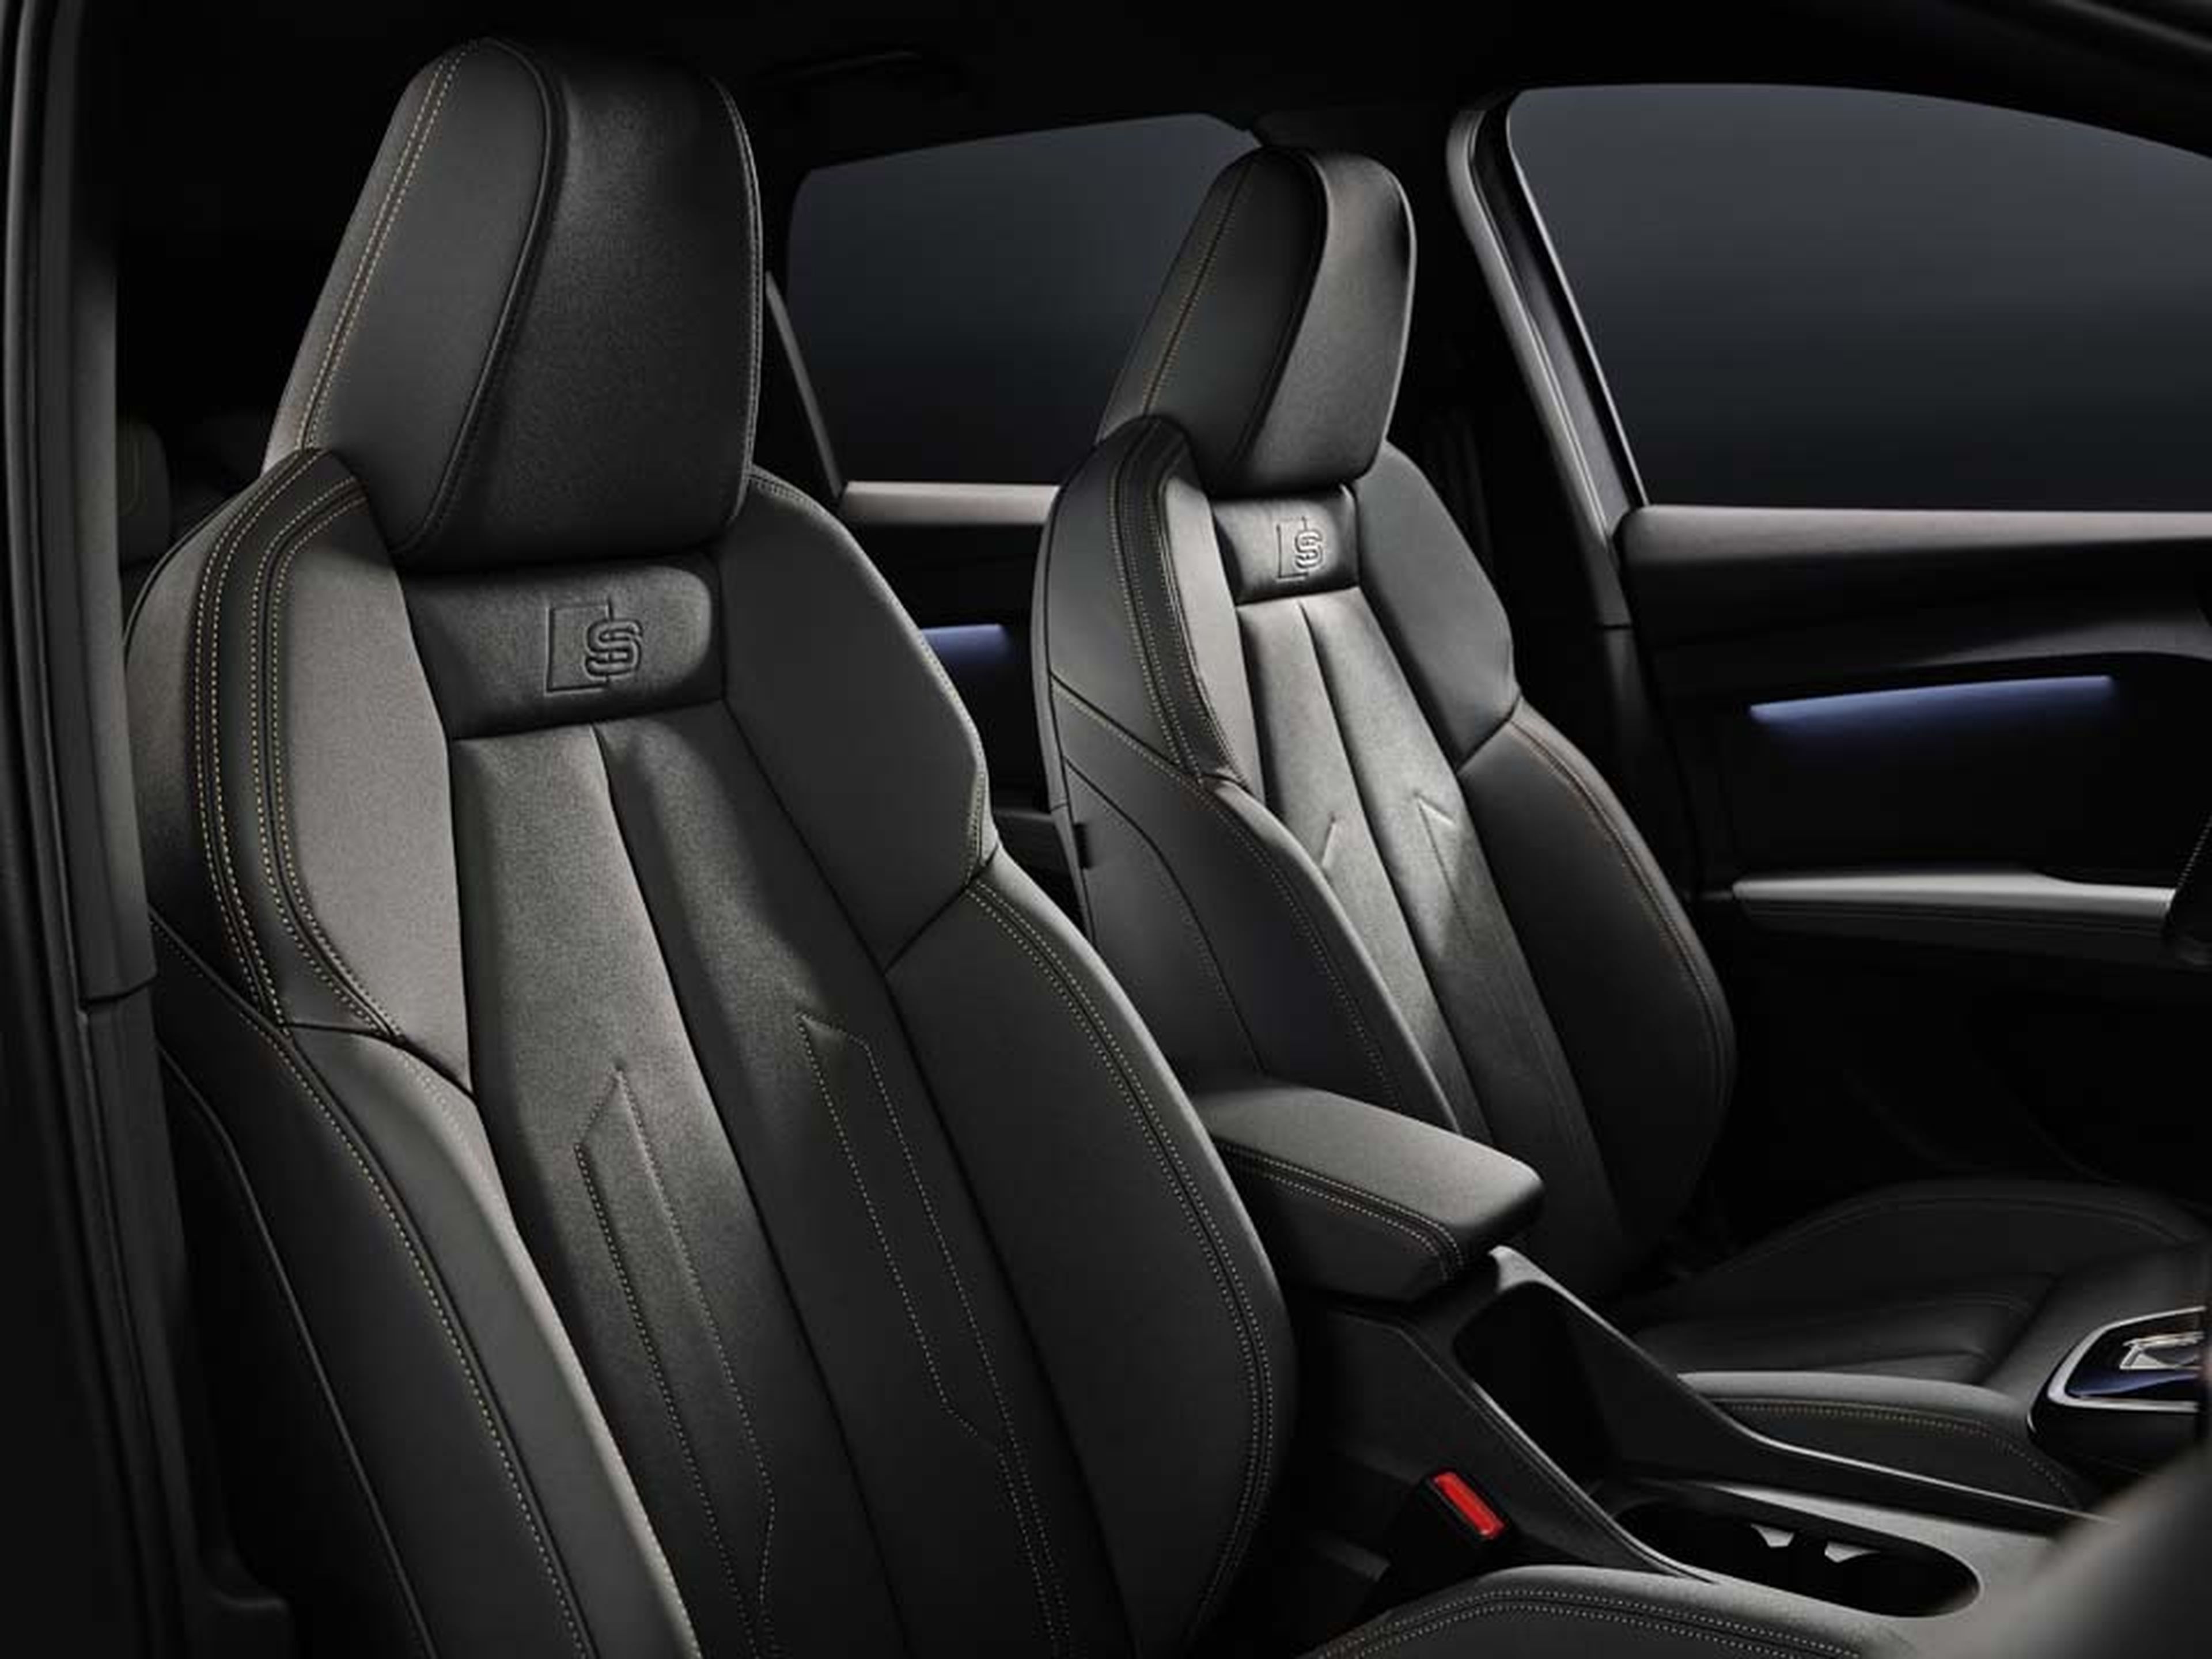 Nuevo Audi Q4 e-tron